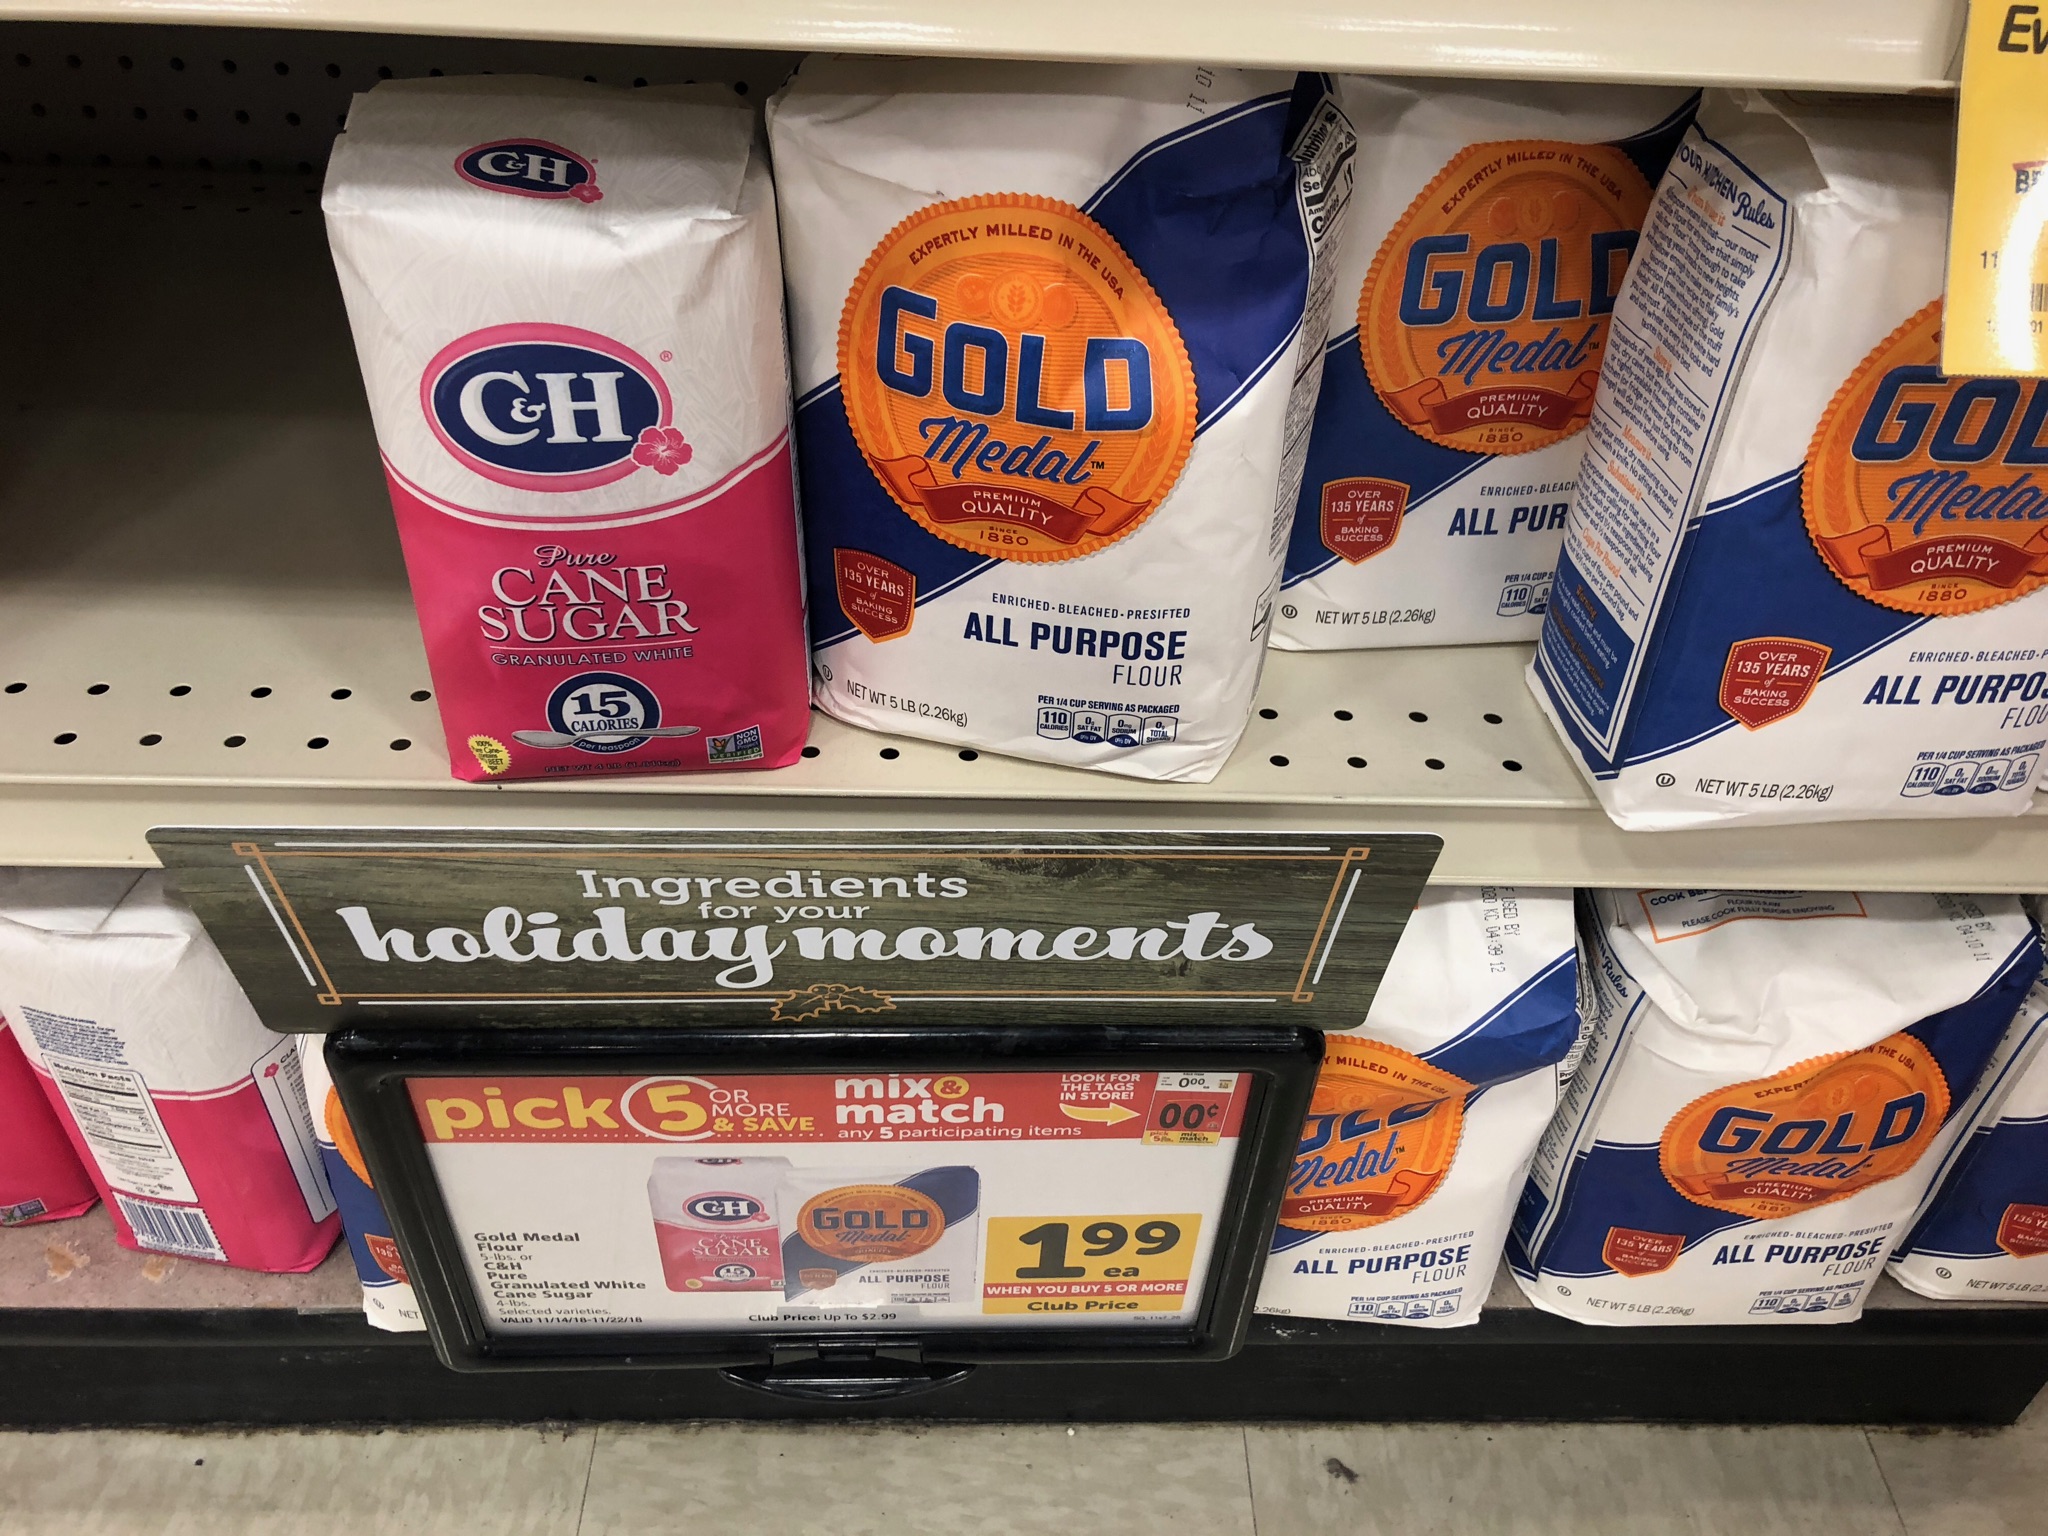 Gold Medal Flour sale